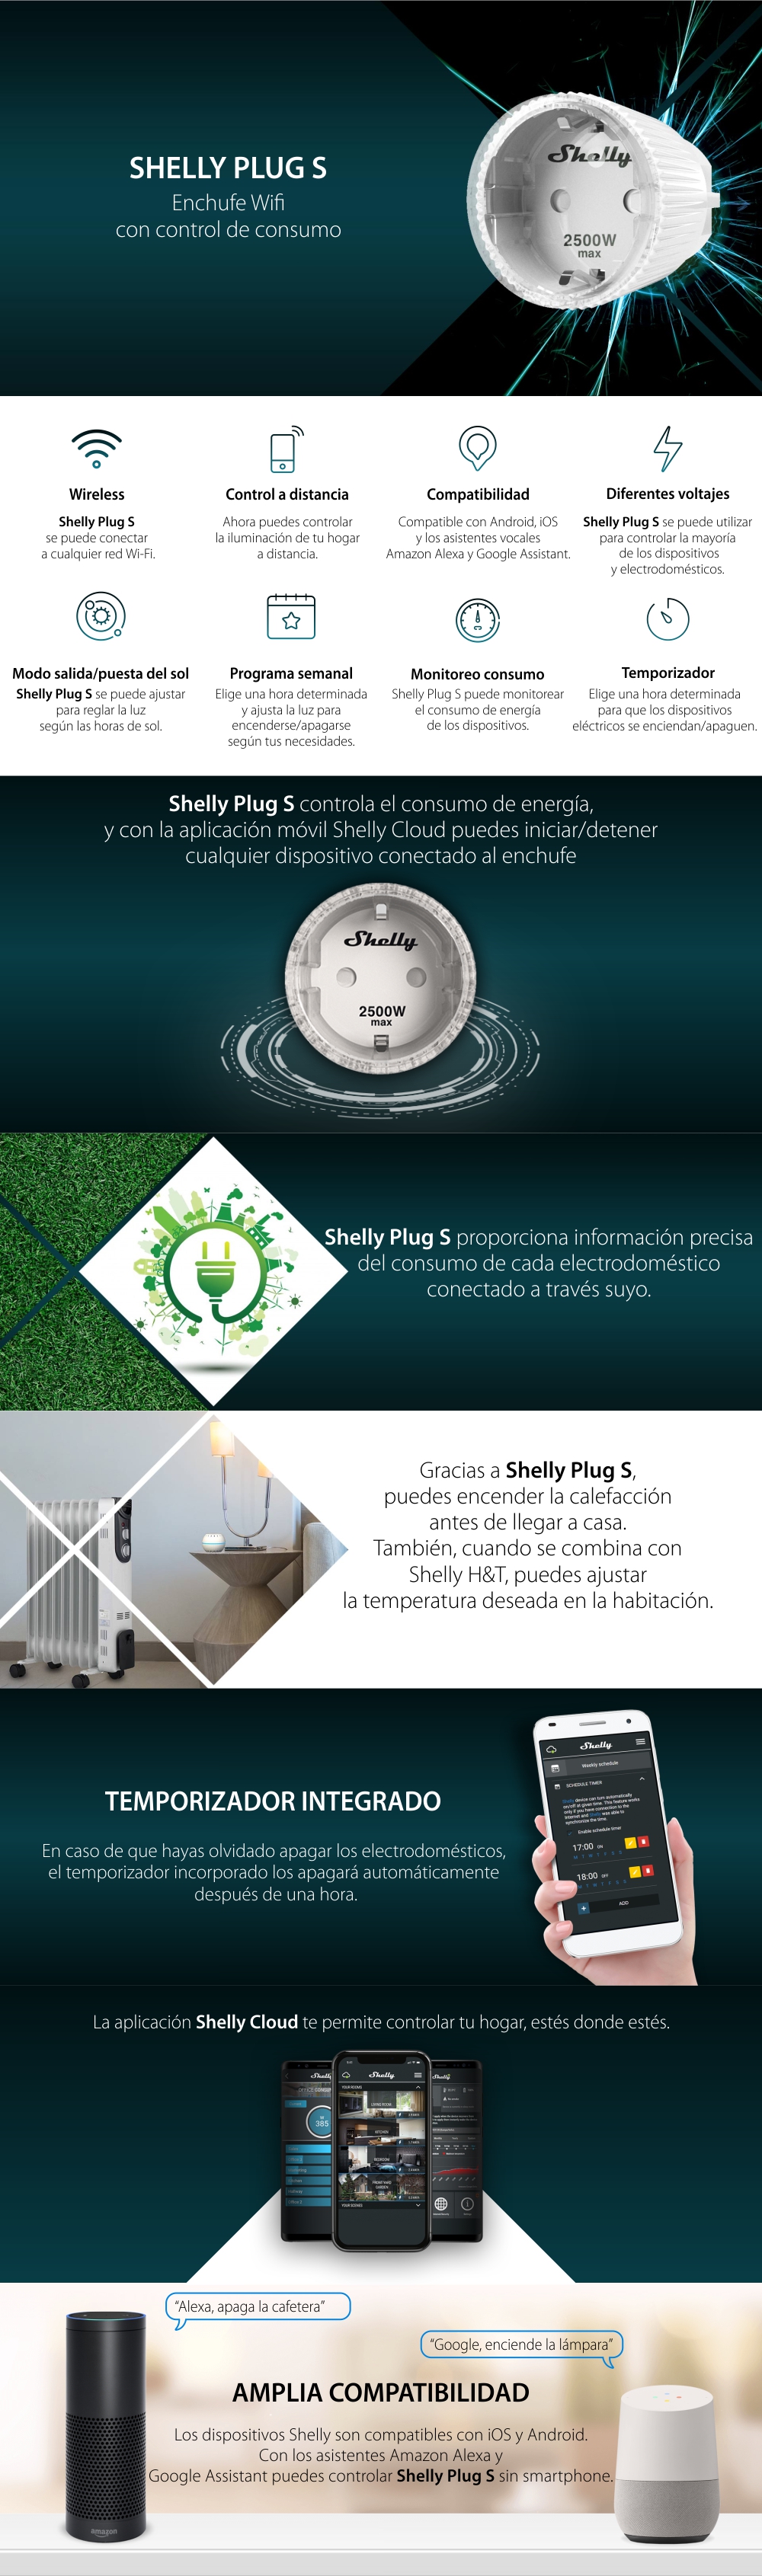 Enchufe Shelly Plug S, Wi-Fi, 2500 W, monitoreo consumo, programación,  color blanco - Casa del Futuro